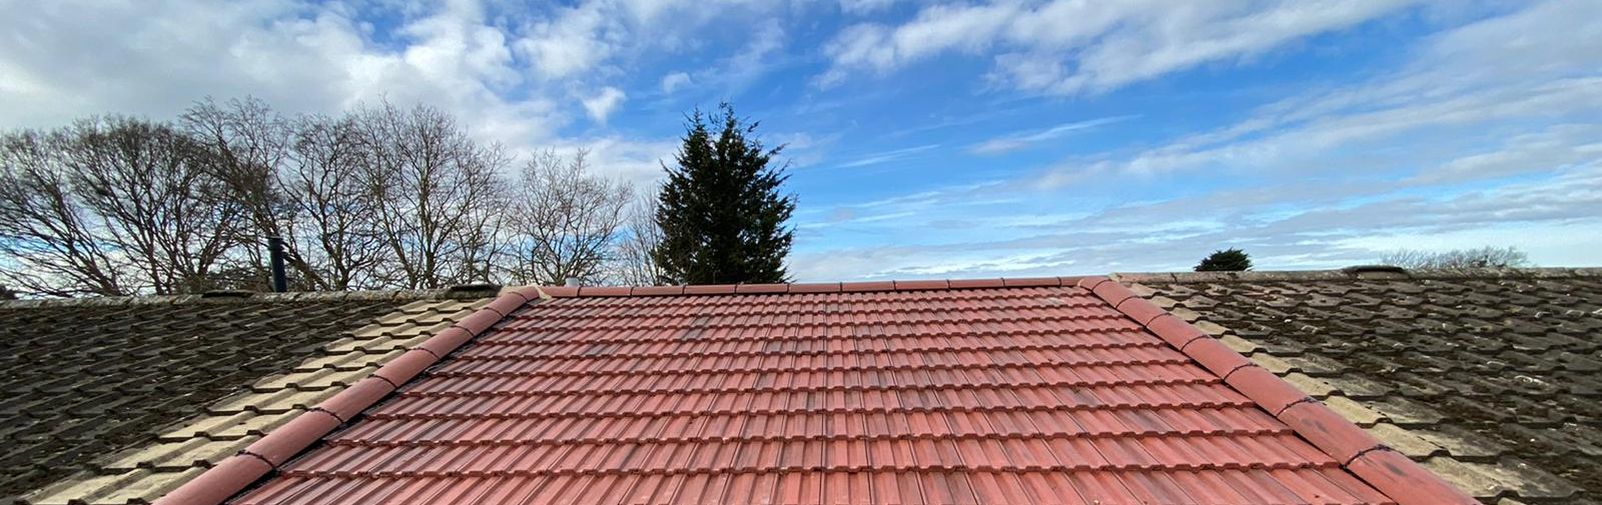 Enfield roof repairs 5